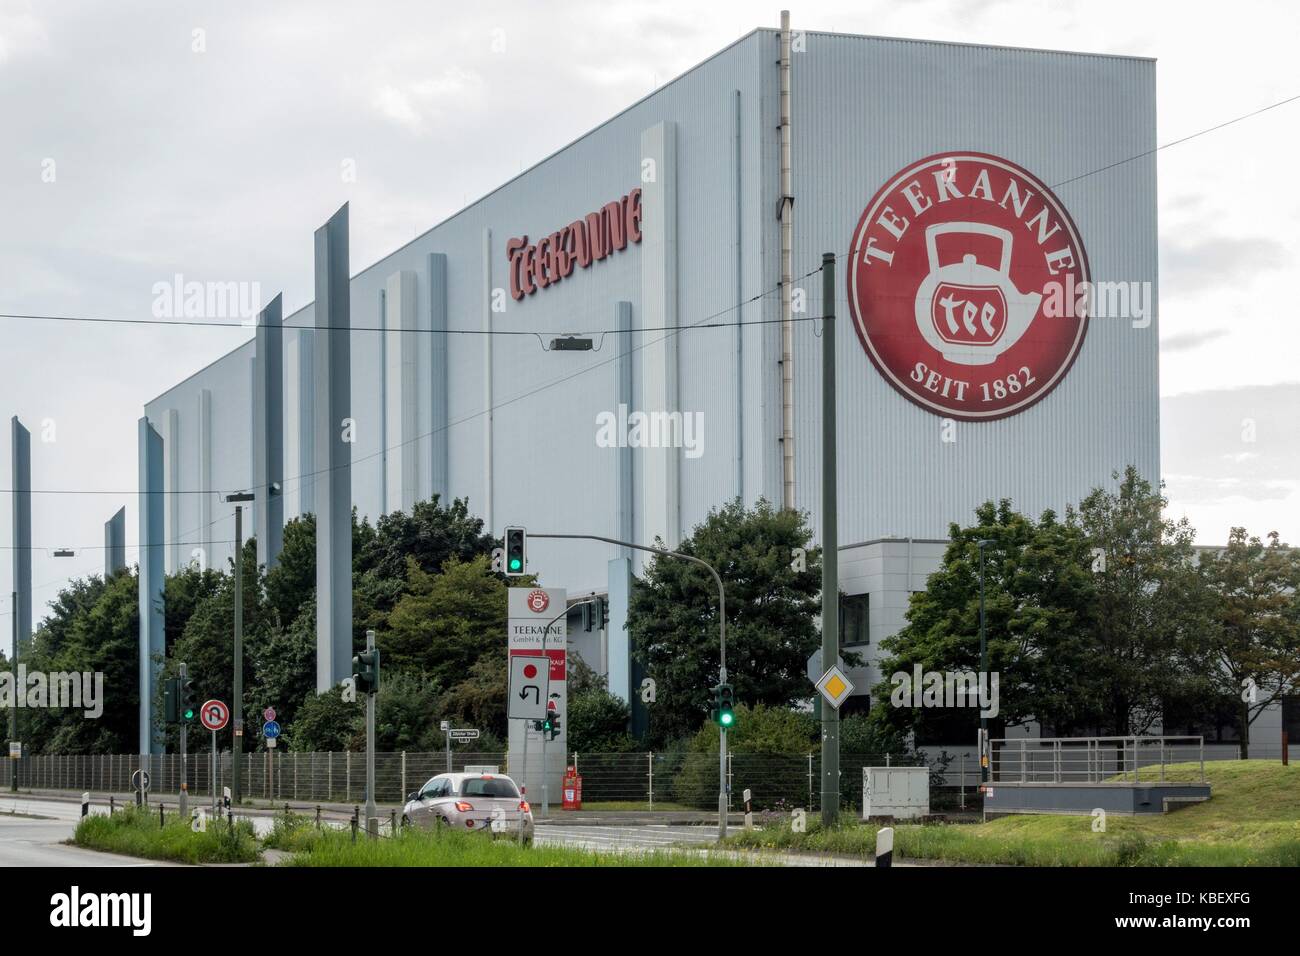 Deutschland: Hauptsitz der Teekanne GmbH & Co.KG, Düsseldorf. Teekanne ist  ein deutscher Kaffee Trading Company. Foto vom 19. August 2017. |  Verwendung weltweit Stockfotografie - Alamy